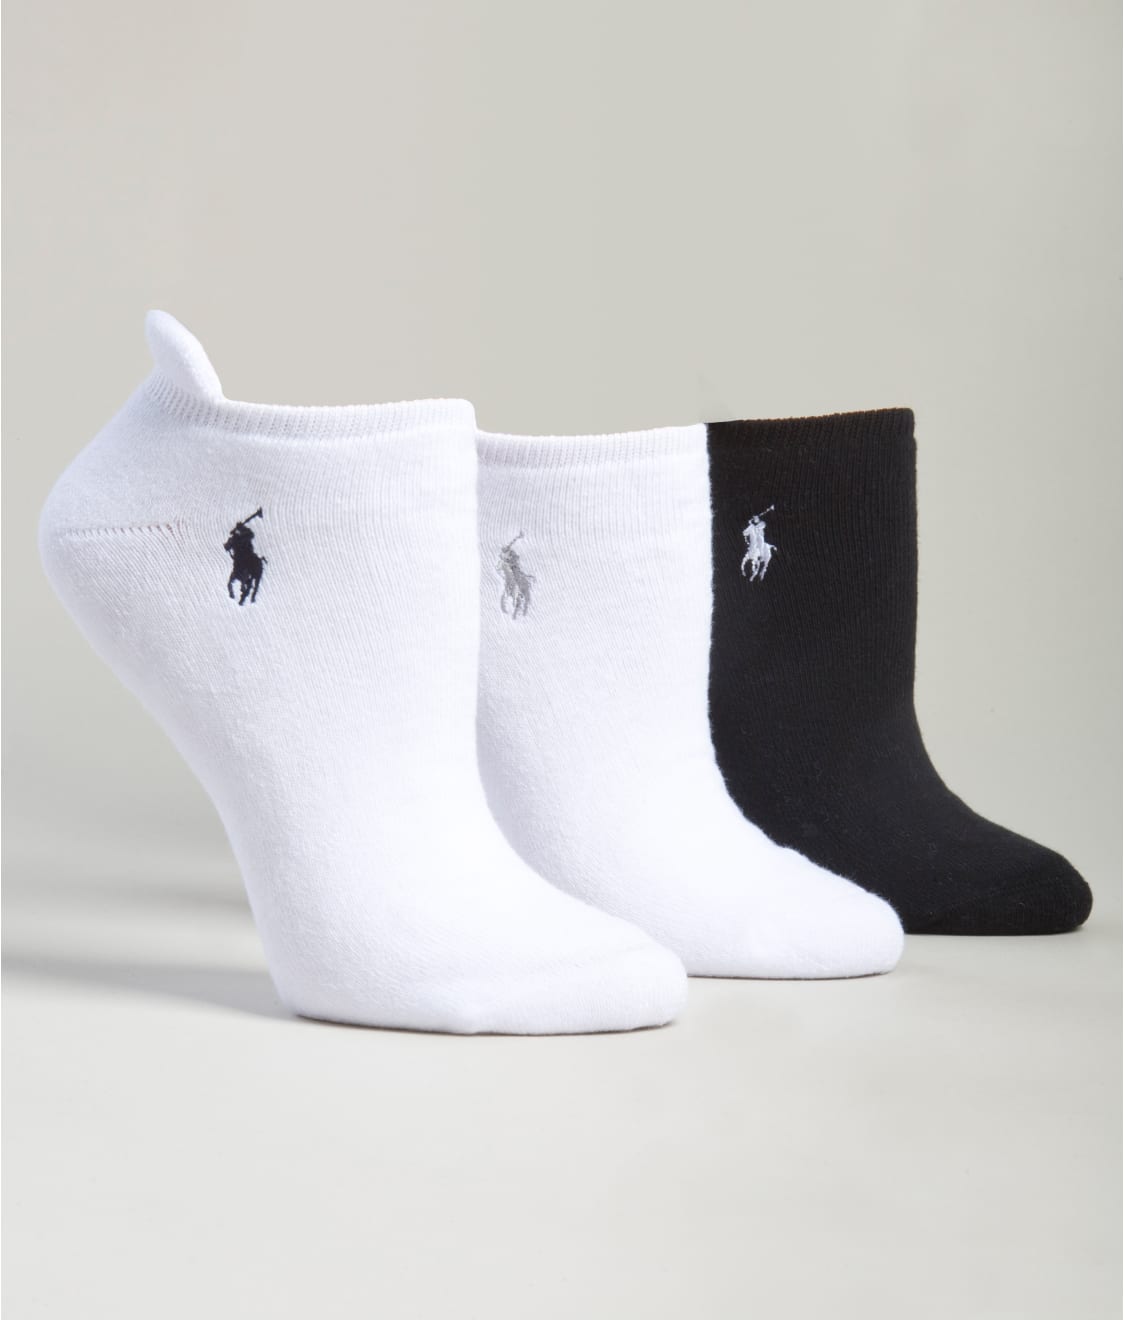 socks with heel tab